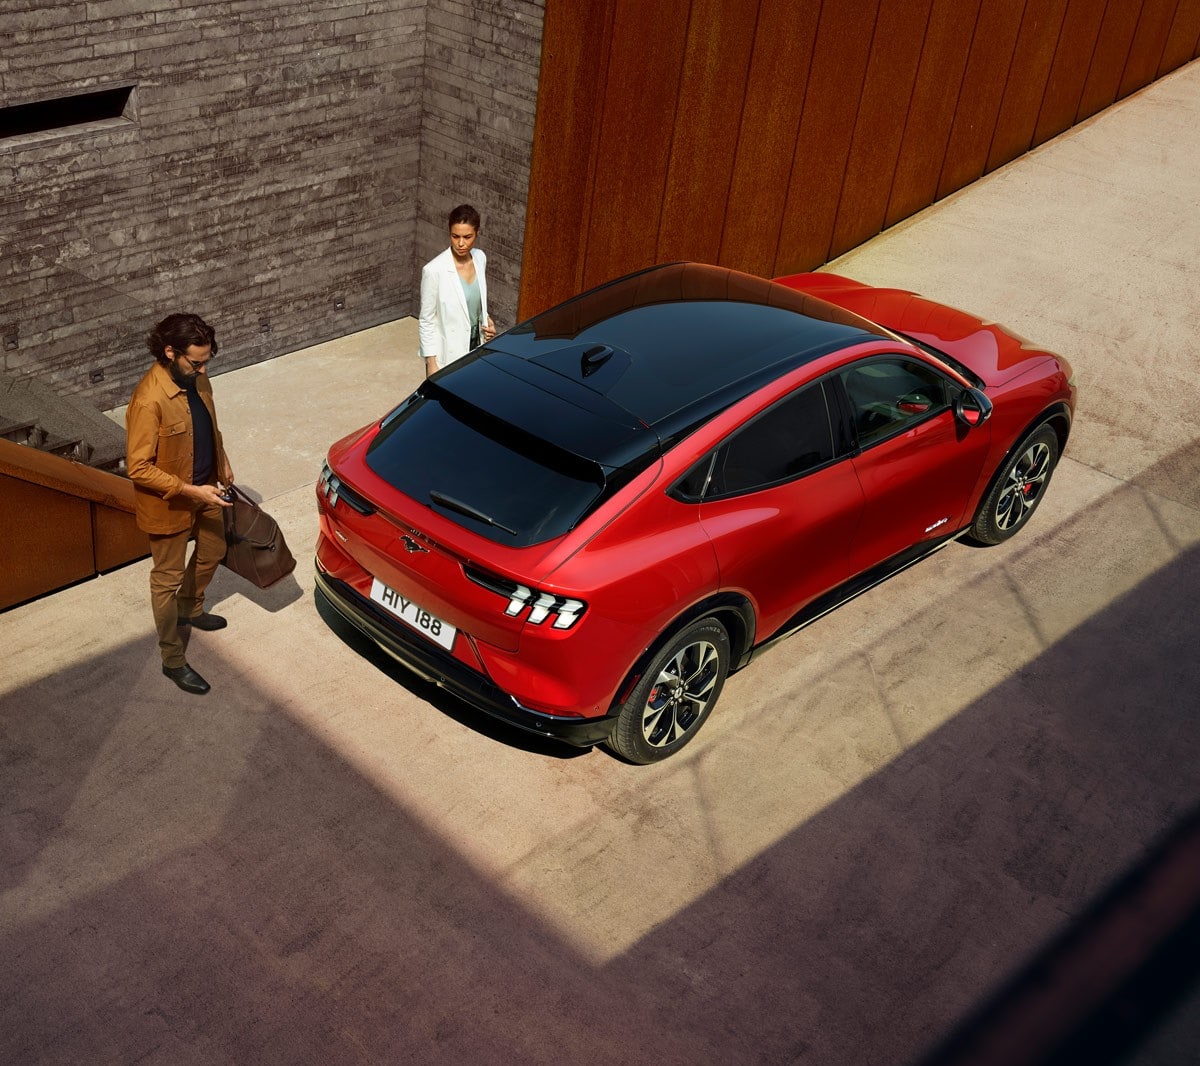 Ford Mustang Mach-E in Rot. Dreiviertelansicht von oben, parkend vor einem modernen Gebäude. Frau und Mann stehen neben dem Fahrzeug